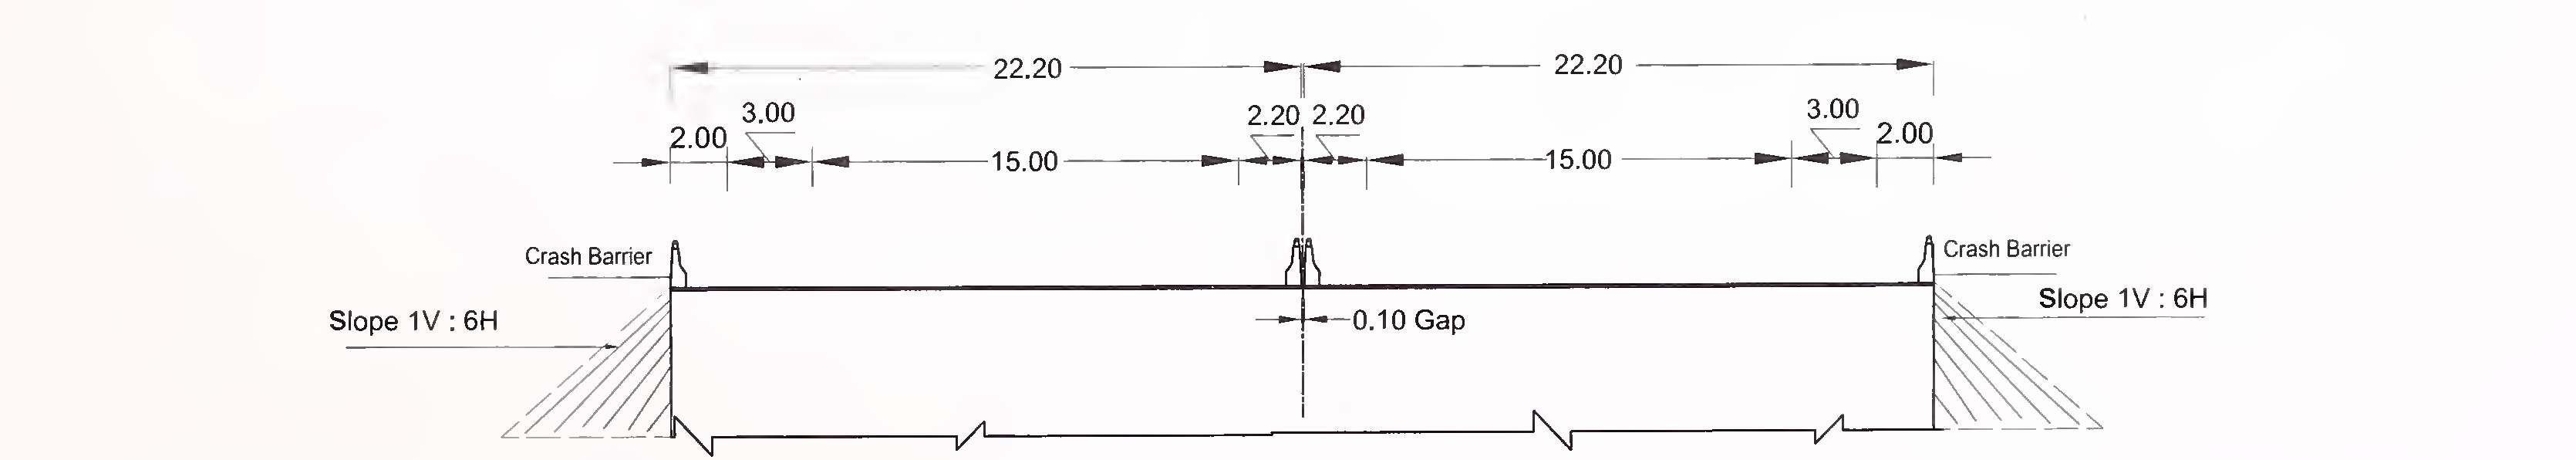 படம் 6.4 (சி) 8-லேன் (2 × 4) எக்ஸ்பிரஸ் நெடுஞ்சாலைக்கான ஸ்லாப் மற்றும் பெட்டி வகை கல்வெட்டின் வழக்கமான குறுக்கு வெட்டு ஃப்ளஷ் மீடியனுடன்